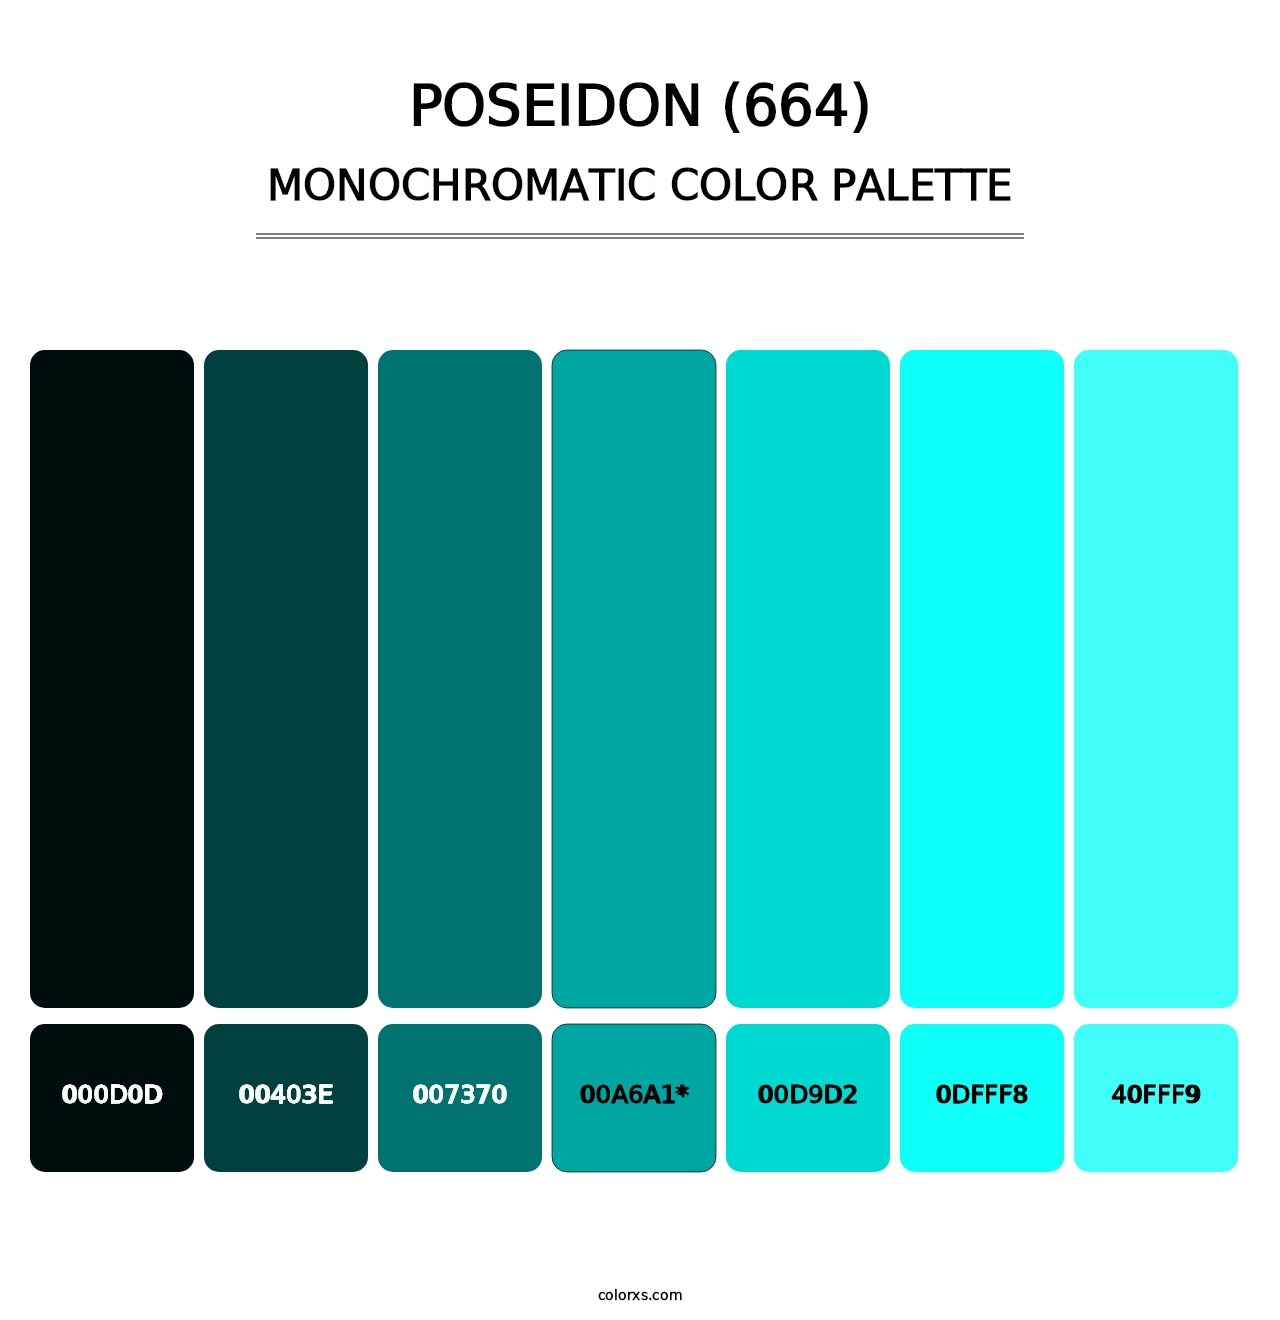 Poseidon (664) - Monochromatic Color Palette